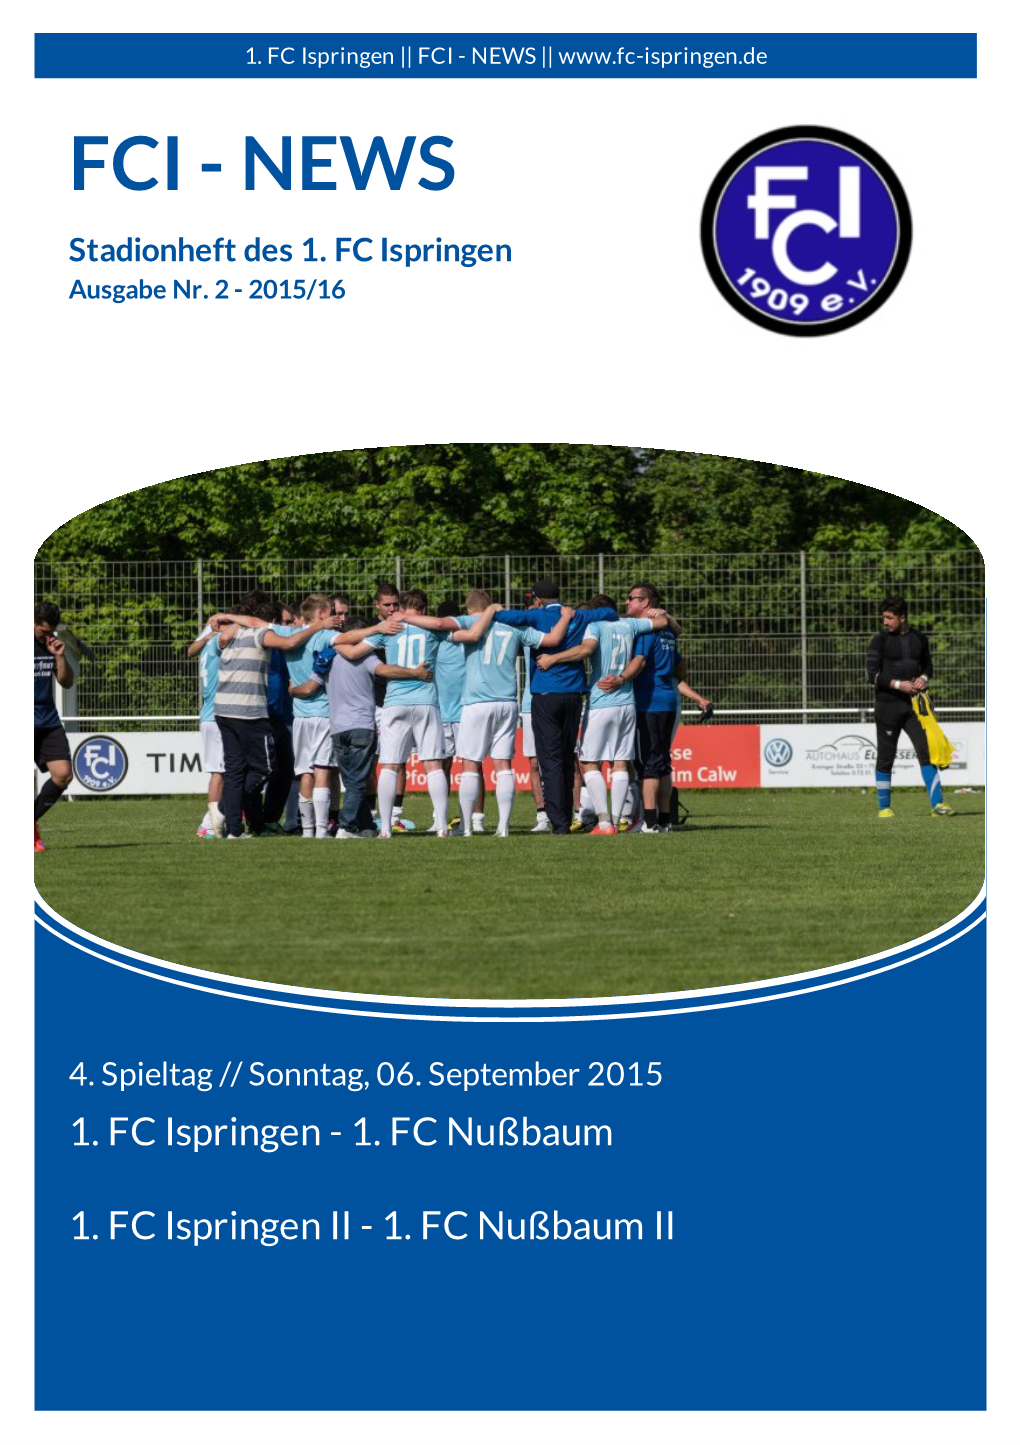 FCI - NEWS || FCI - NEWS Stadionheft Des 1